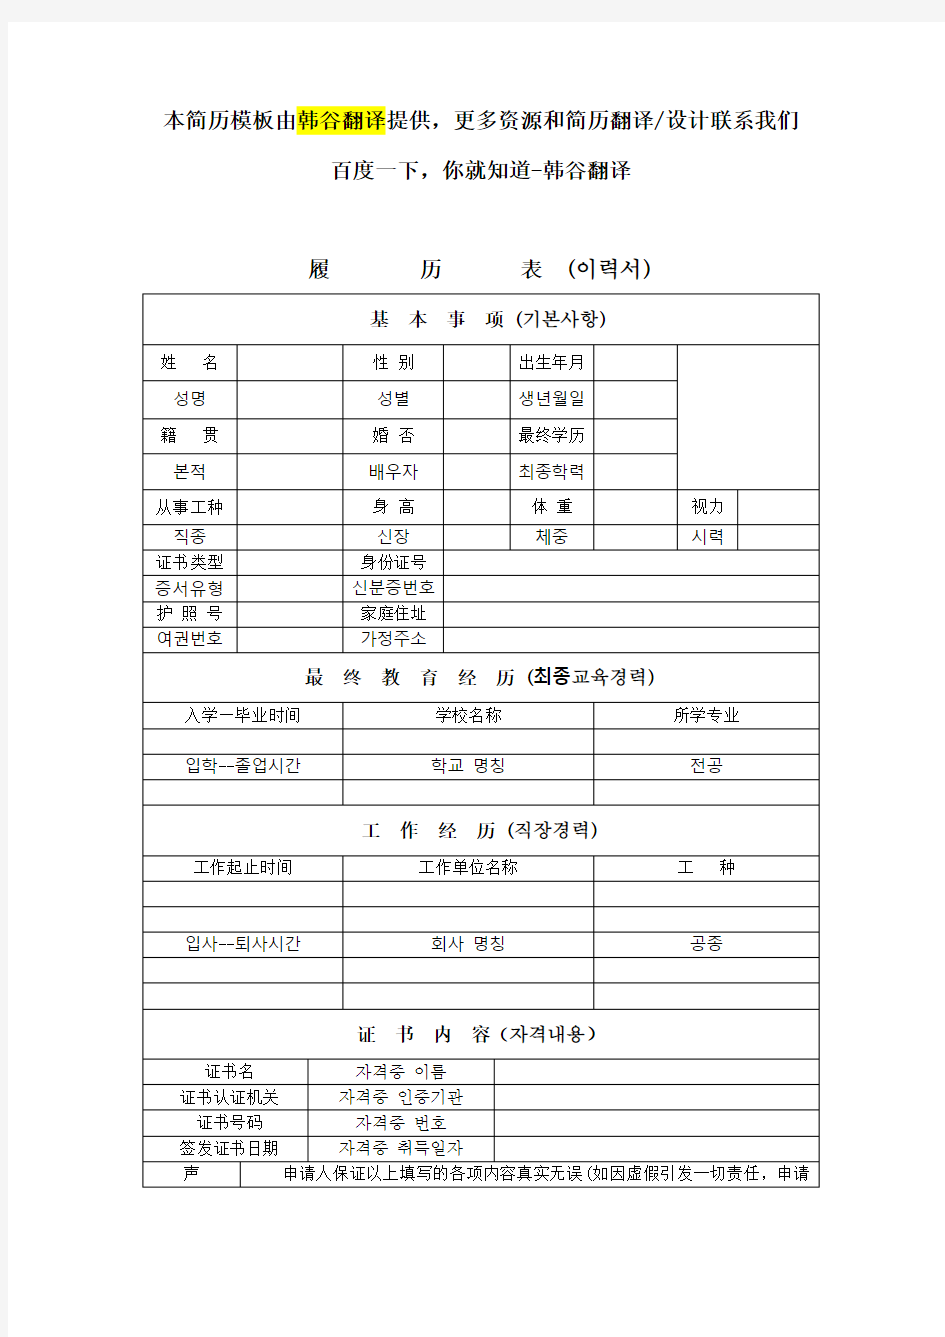 韩语简历模板表格下载(韩中对照)